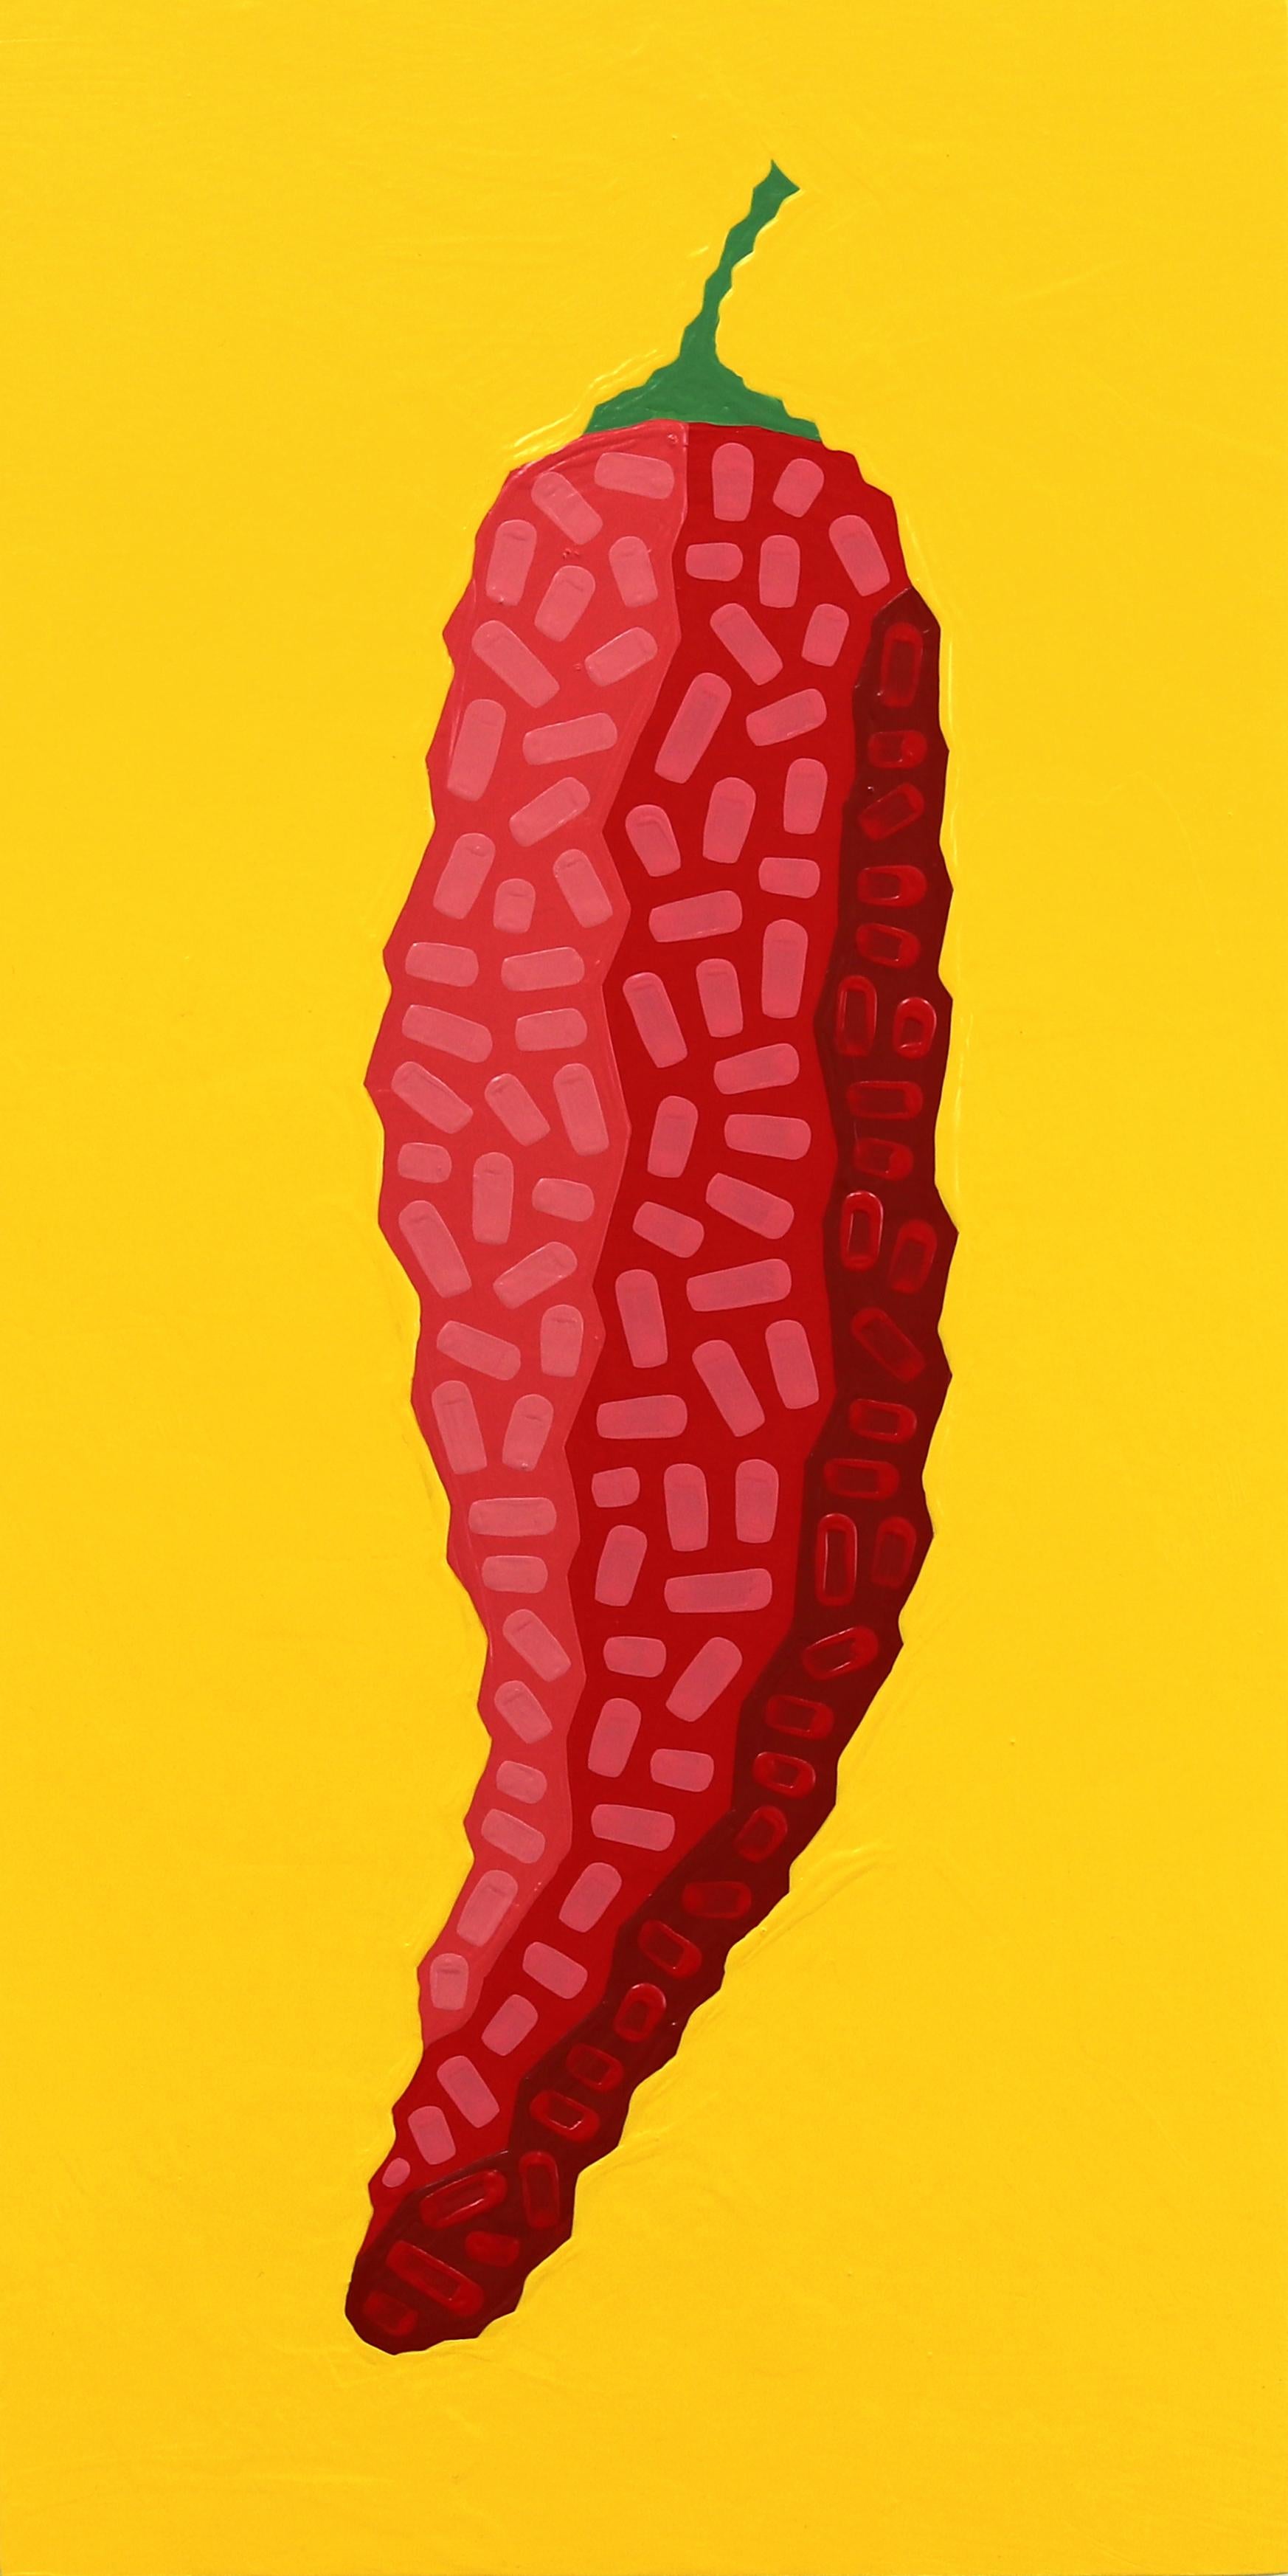 Still-Life Painting Will Beger - Fresno Amarillo  -  Peinture alimentaire rouge, jaune et vibrante inspirée du sud-ouest (Pop Art)